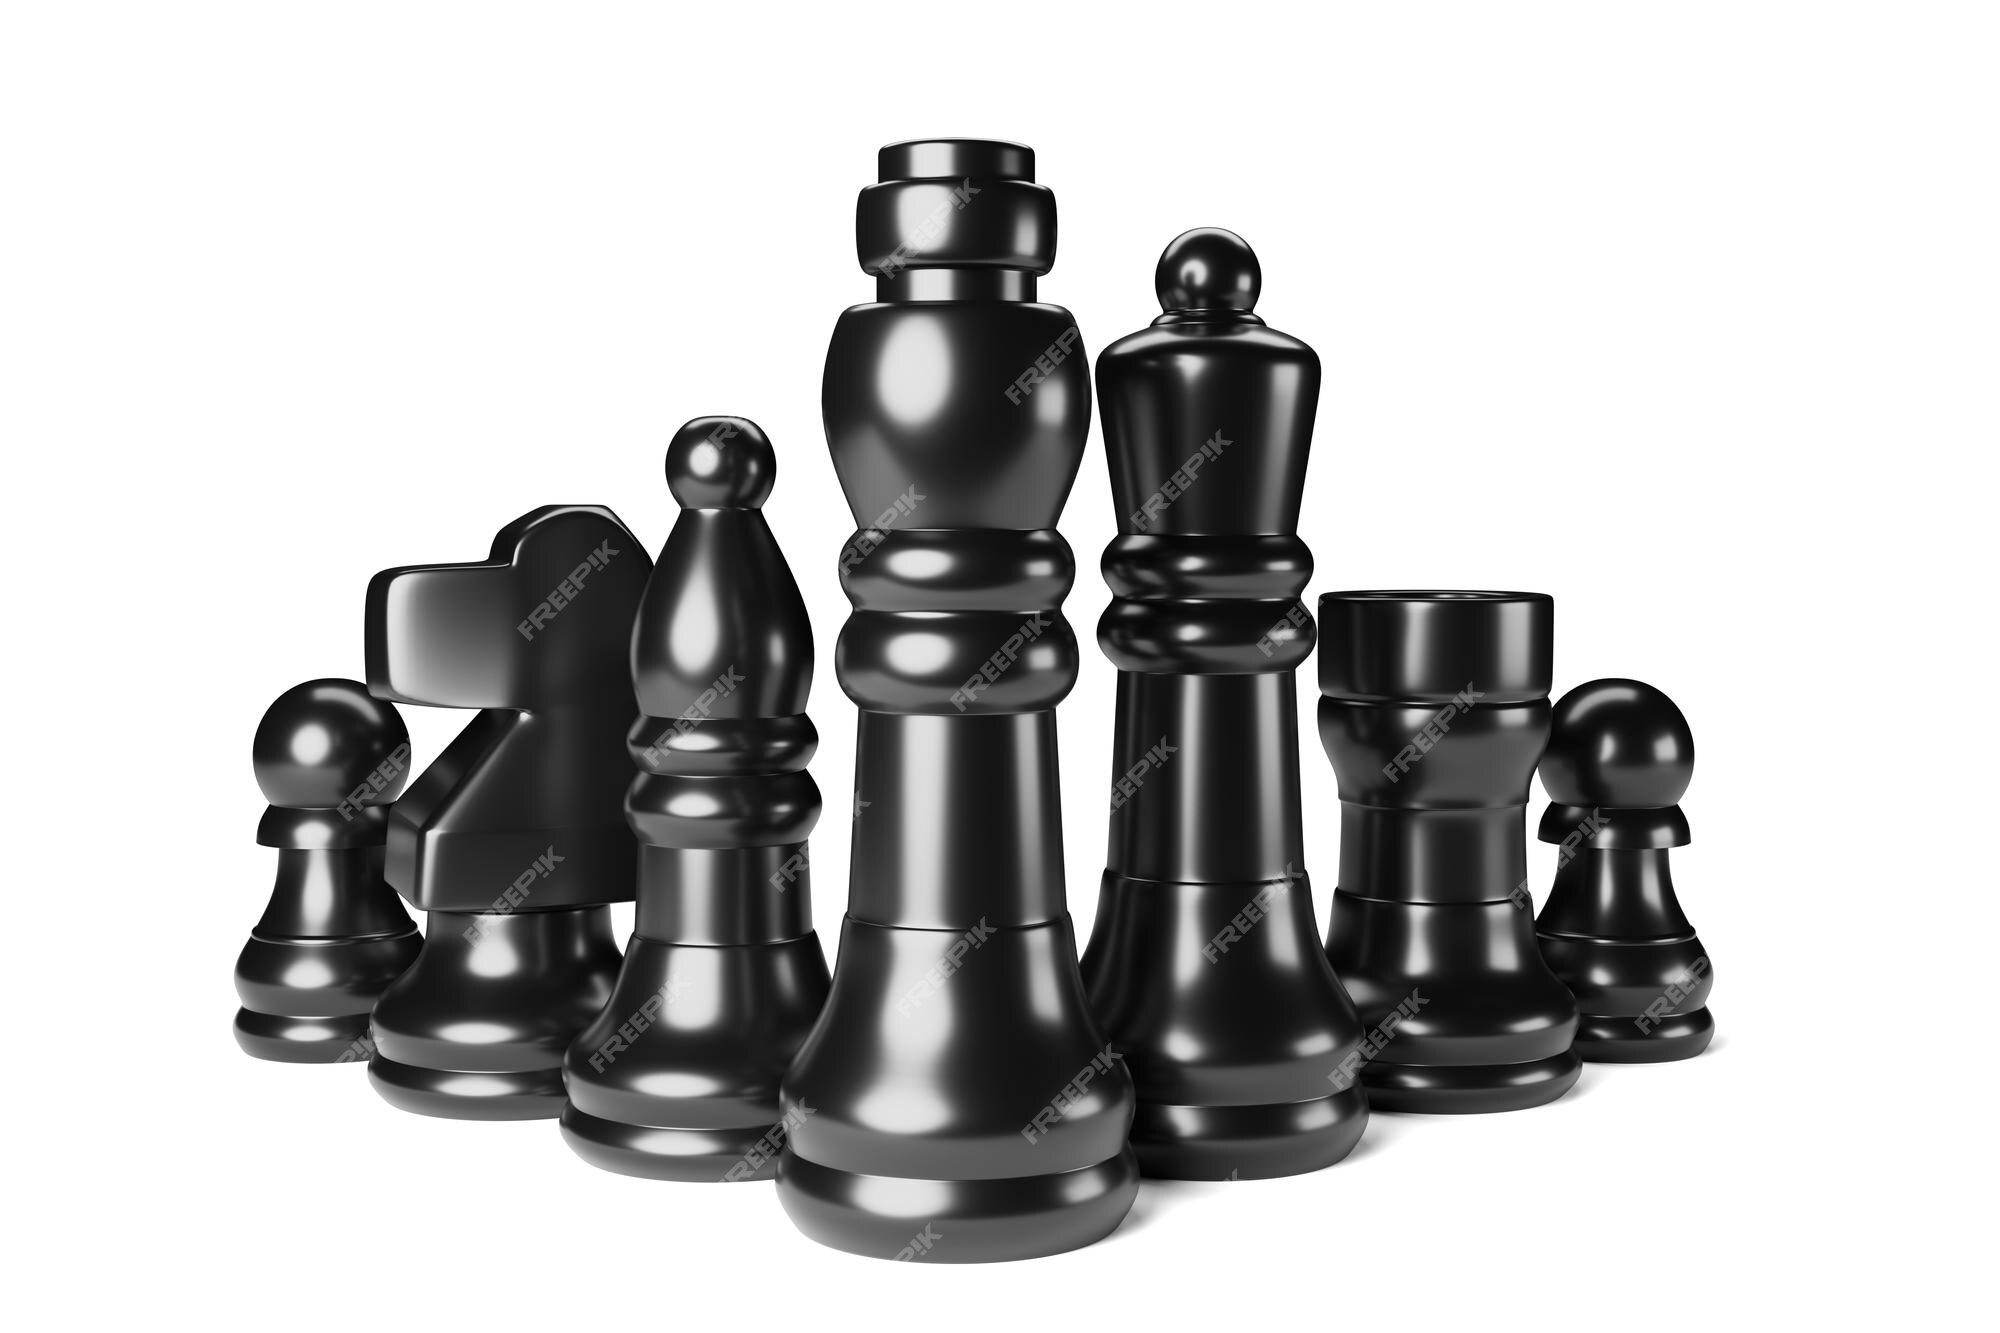 close-up de peças de xadrez empilhadas com a rainha branca destacando-se no  centro, renderização em 3D 2262400 Foto de stock no Vecteezy